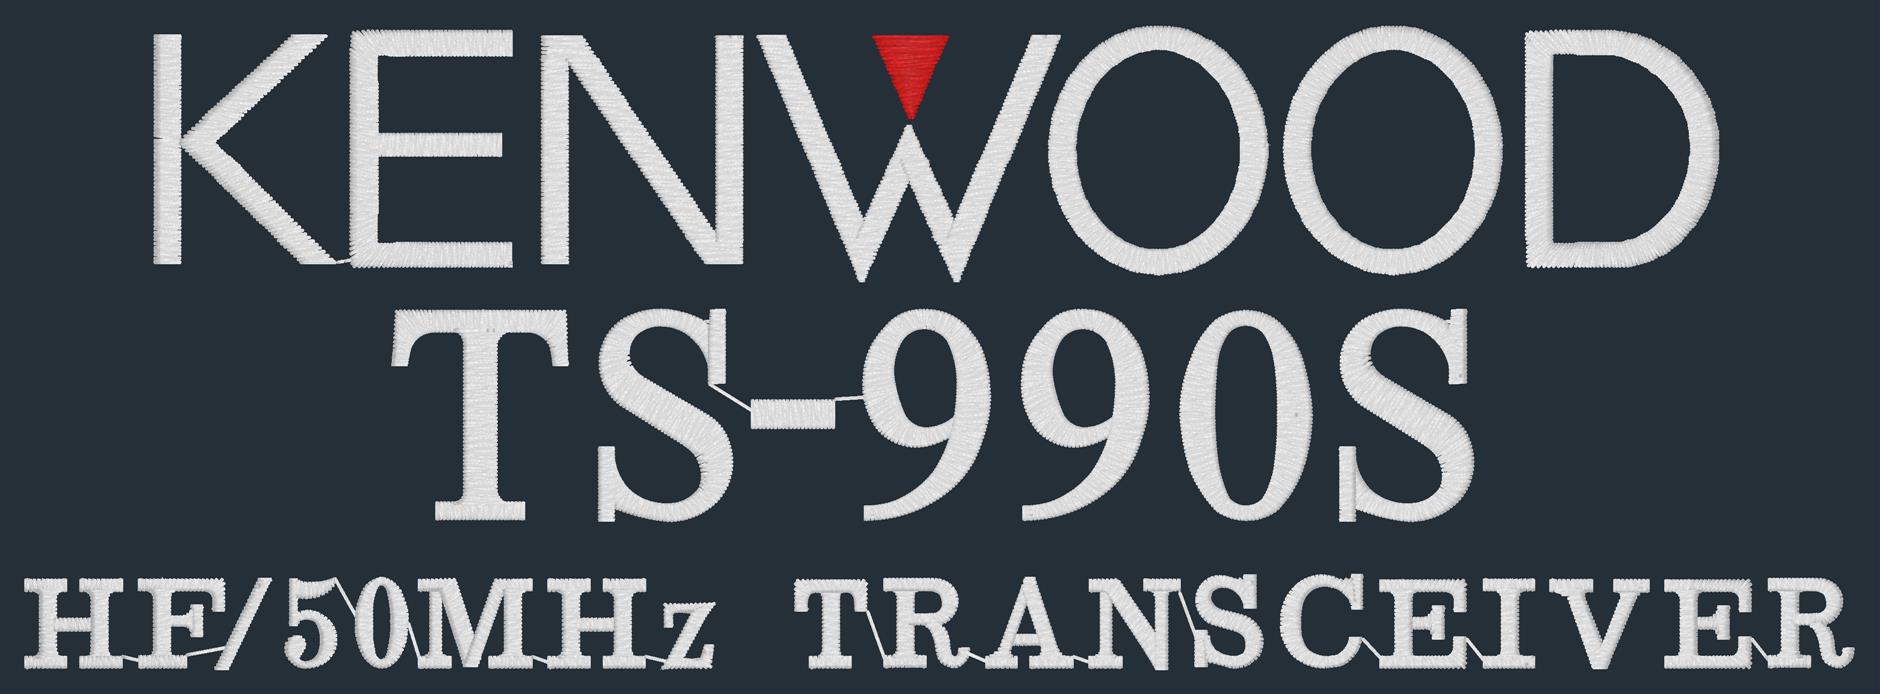 Kenwood TL-922A Ham Radio Amateur Radio Dust Cover 